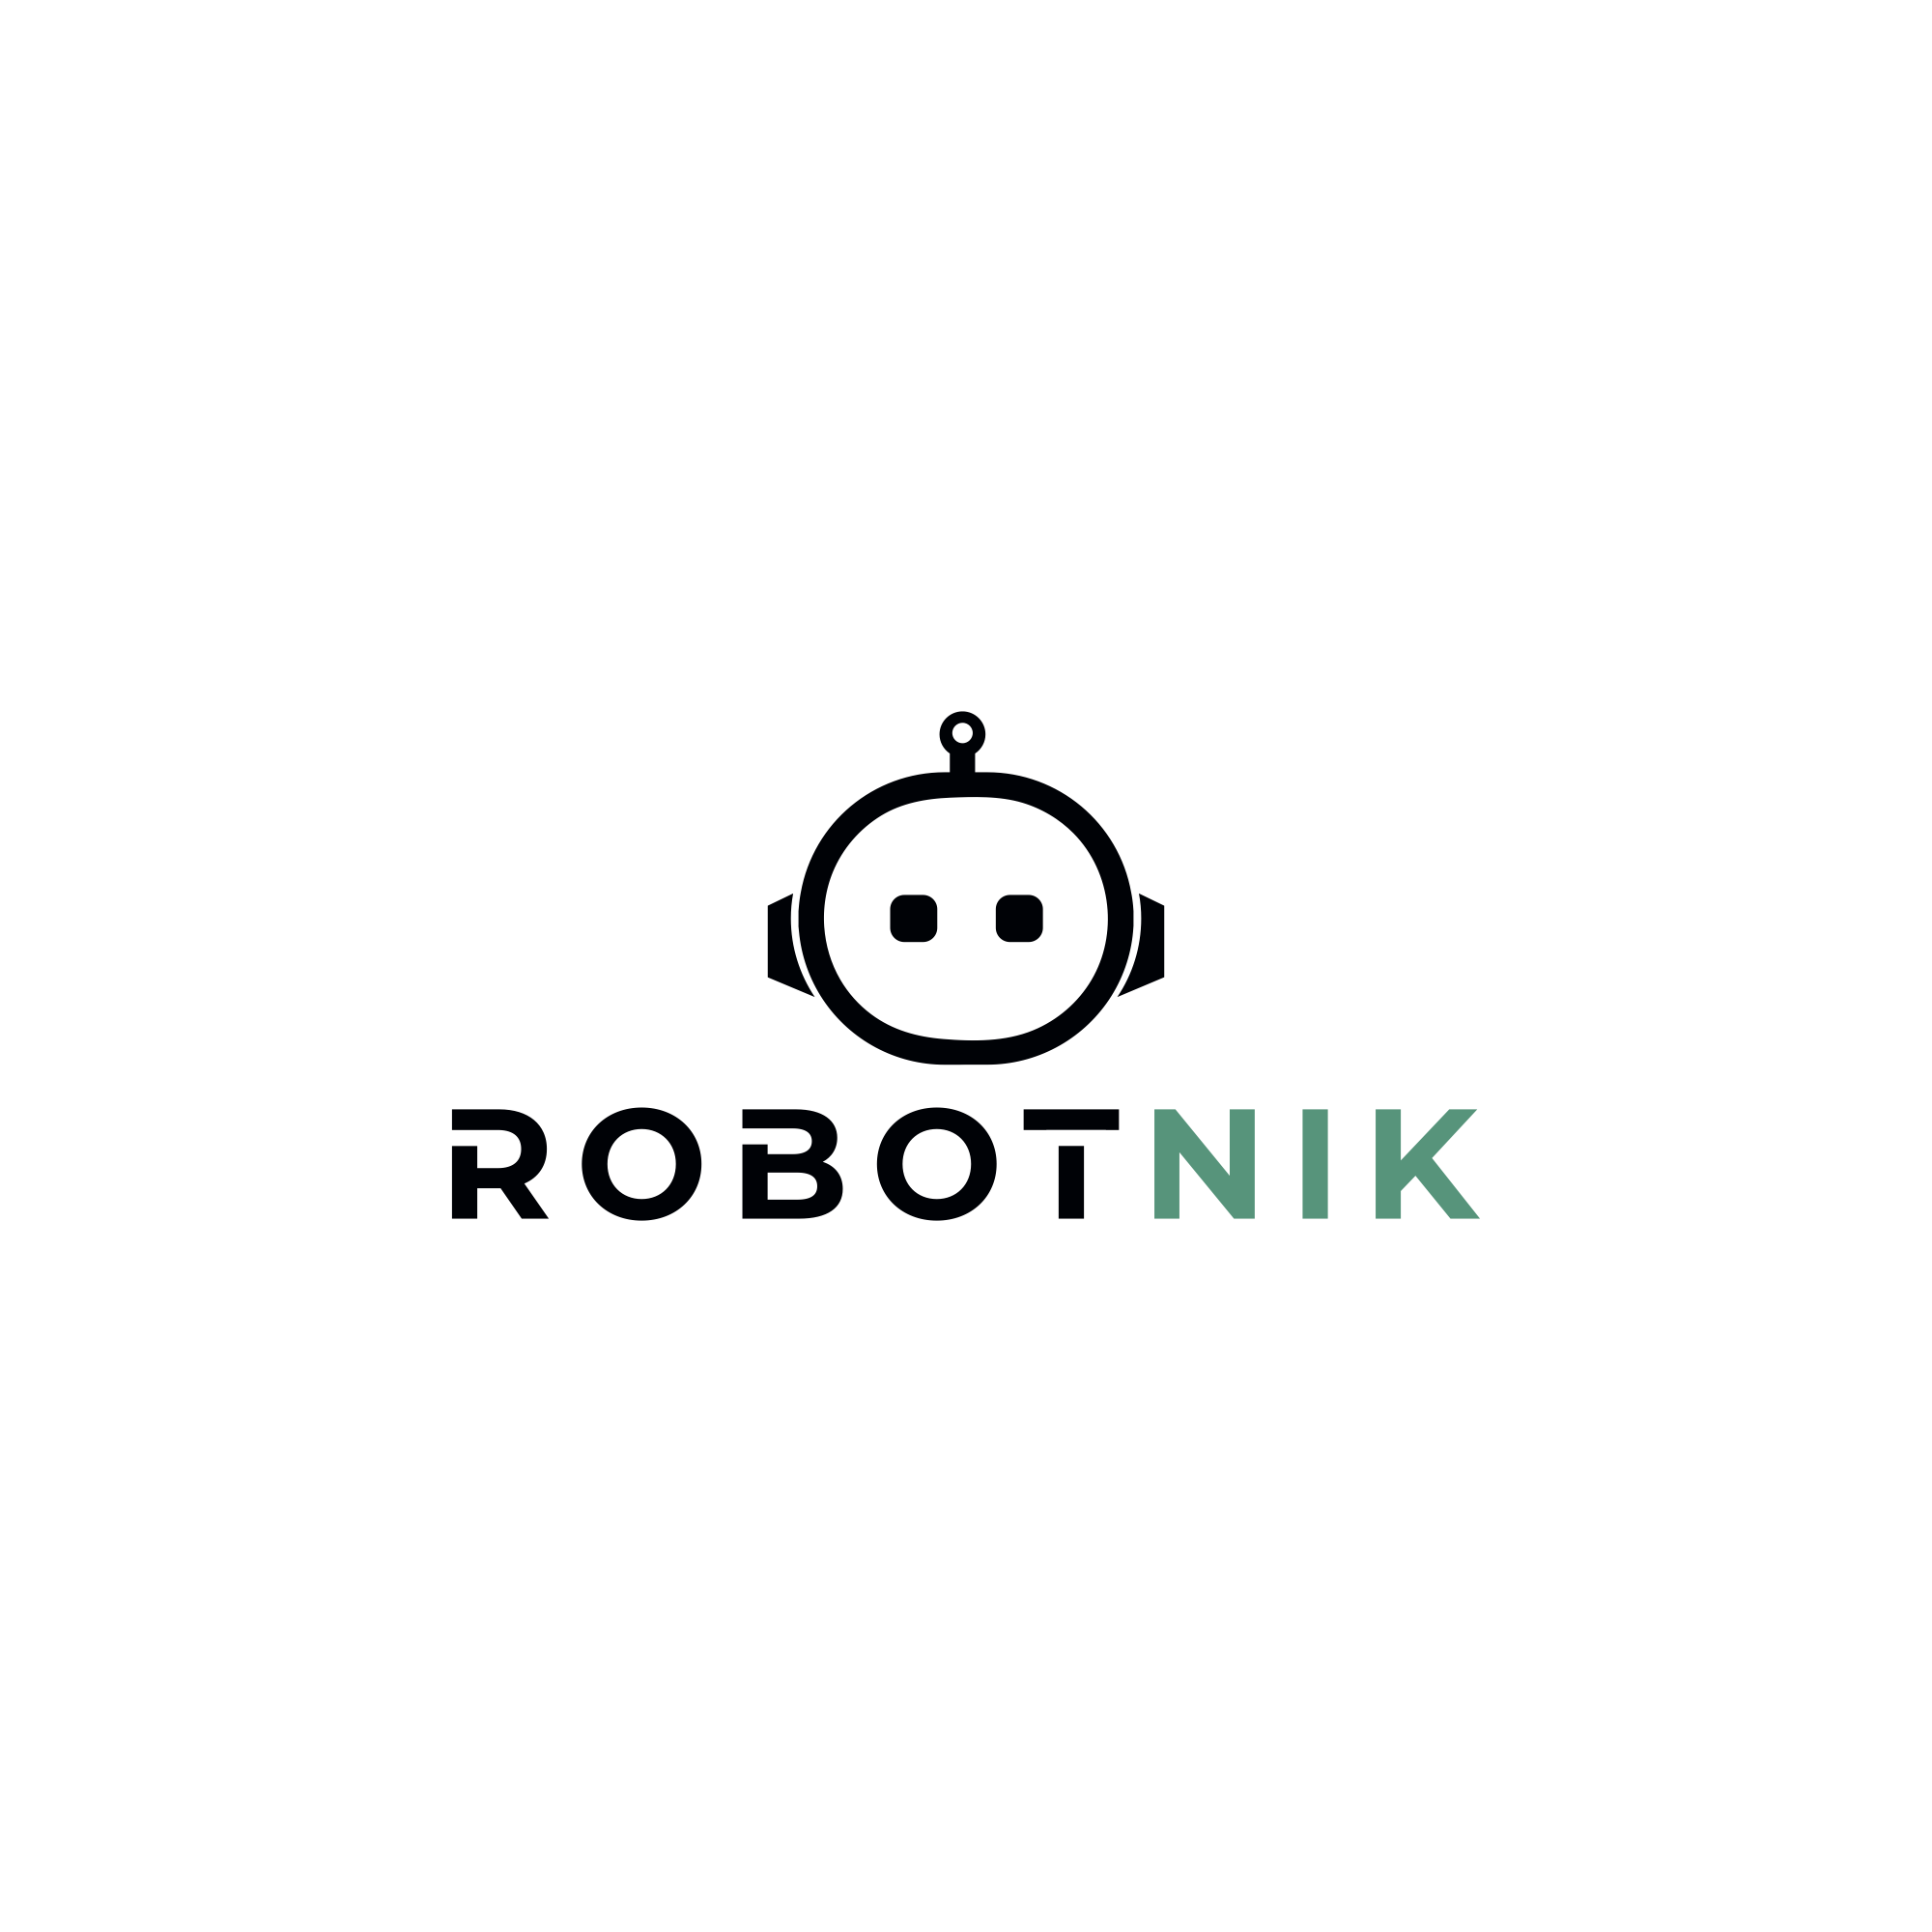 Robotnik logo.PNG